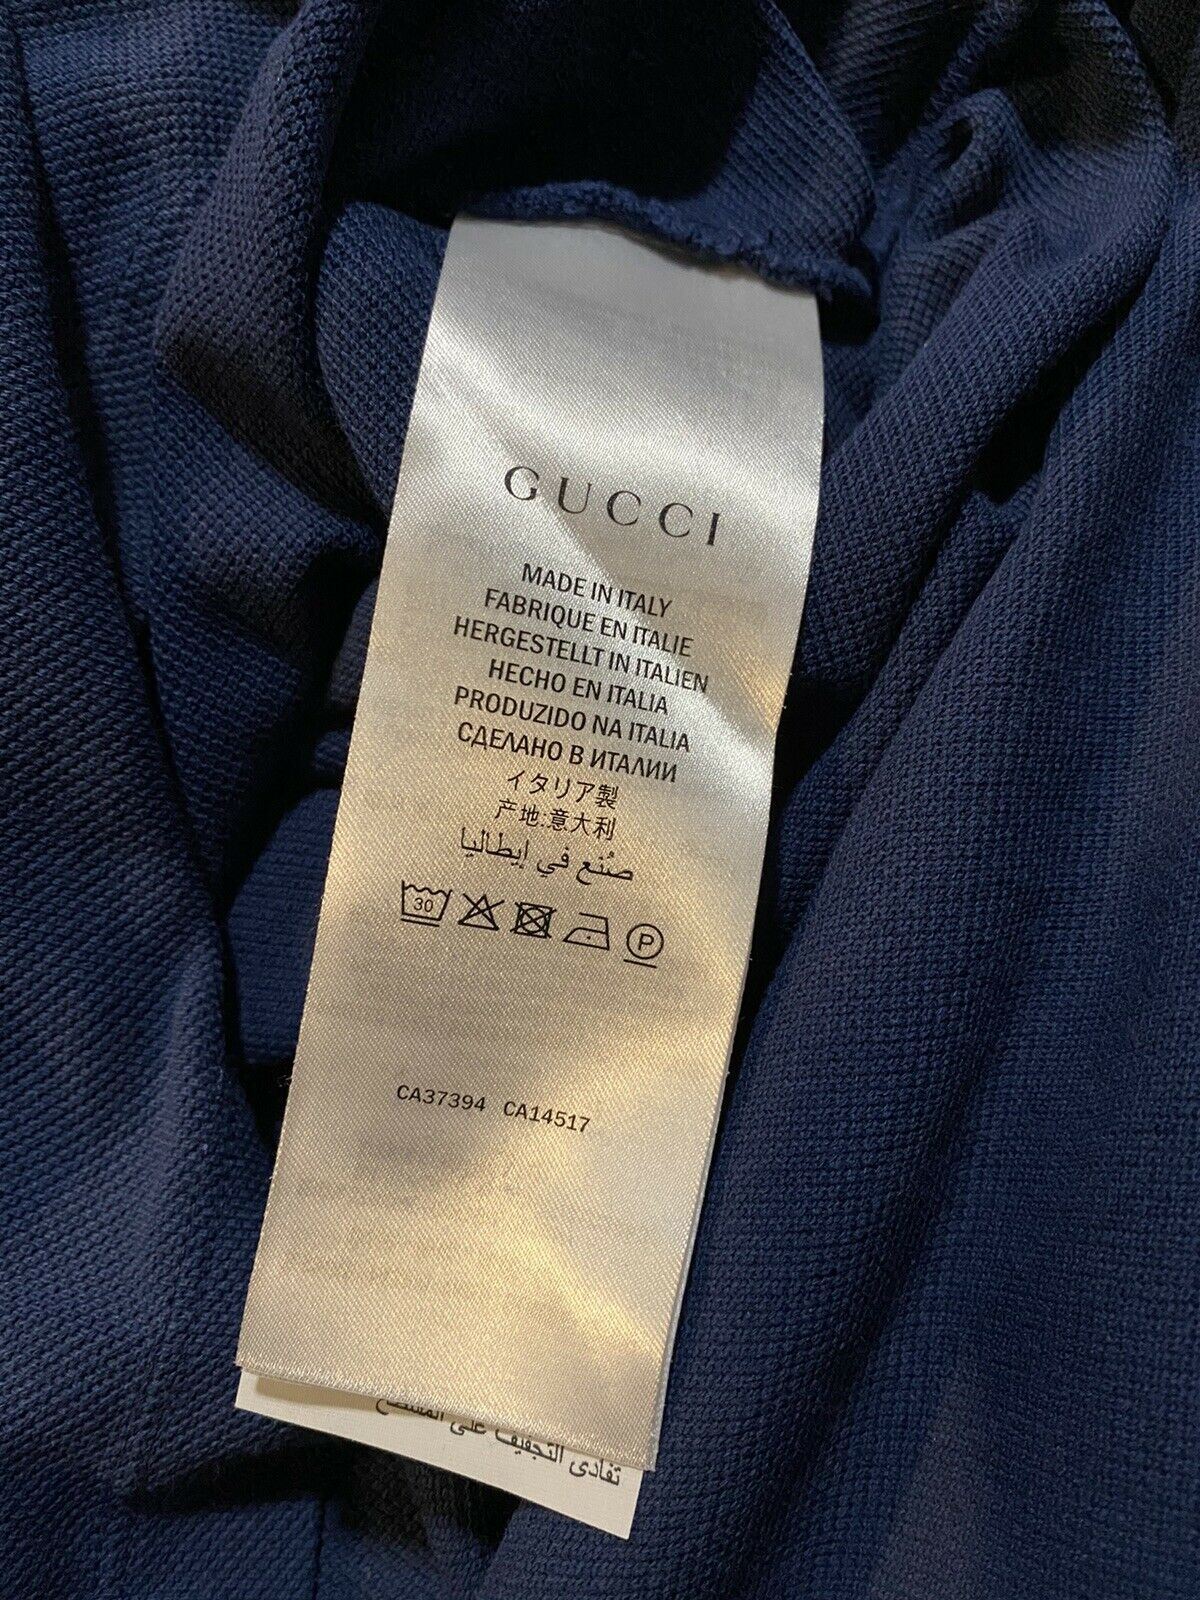 Мужская рубашка-поло большого размера с длинным рукавом NWT Gucci, королевский синий размер S, Италия